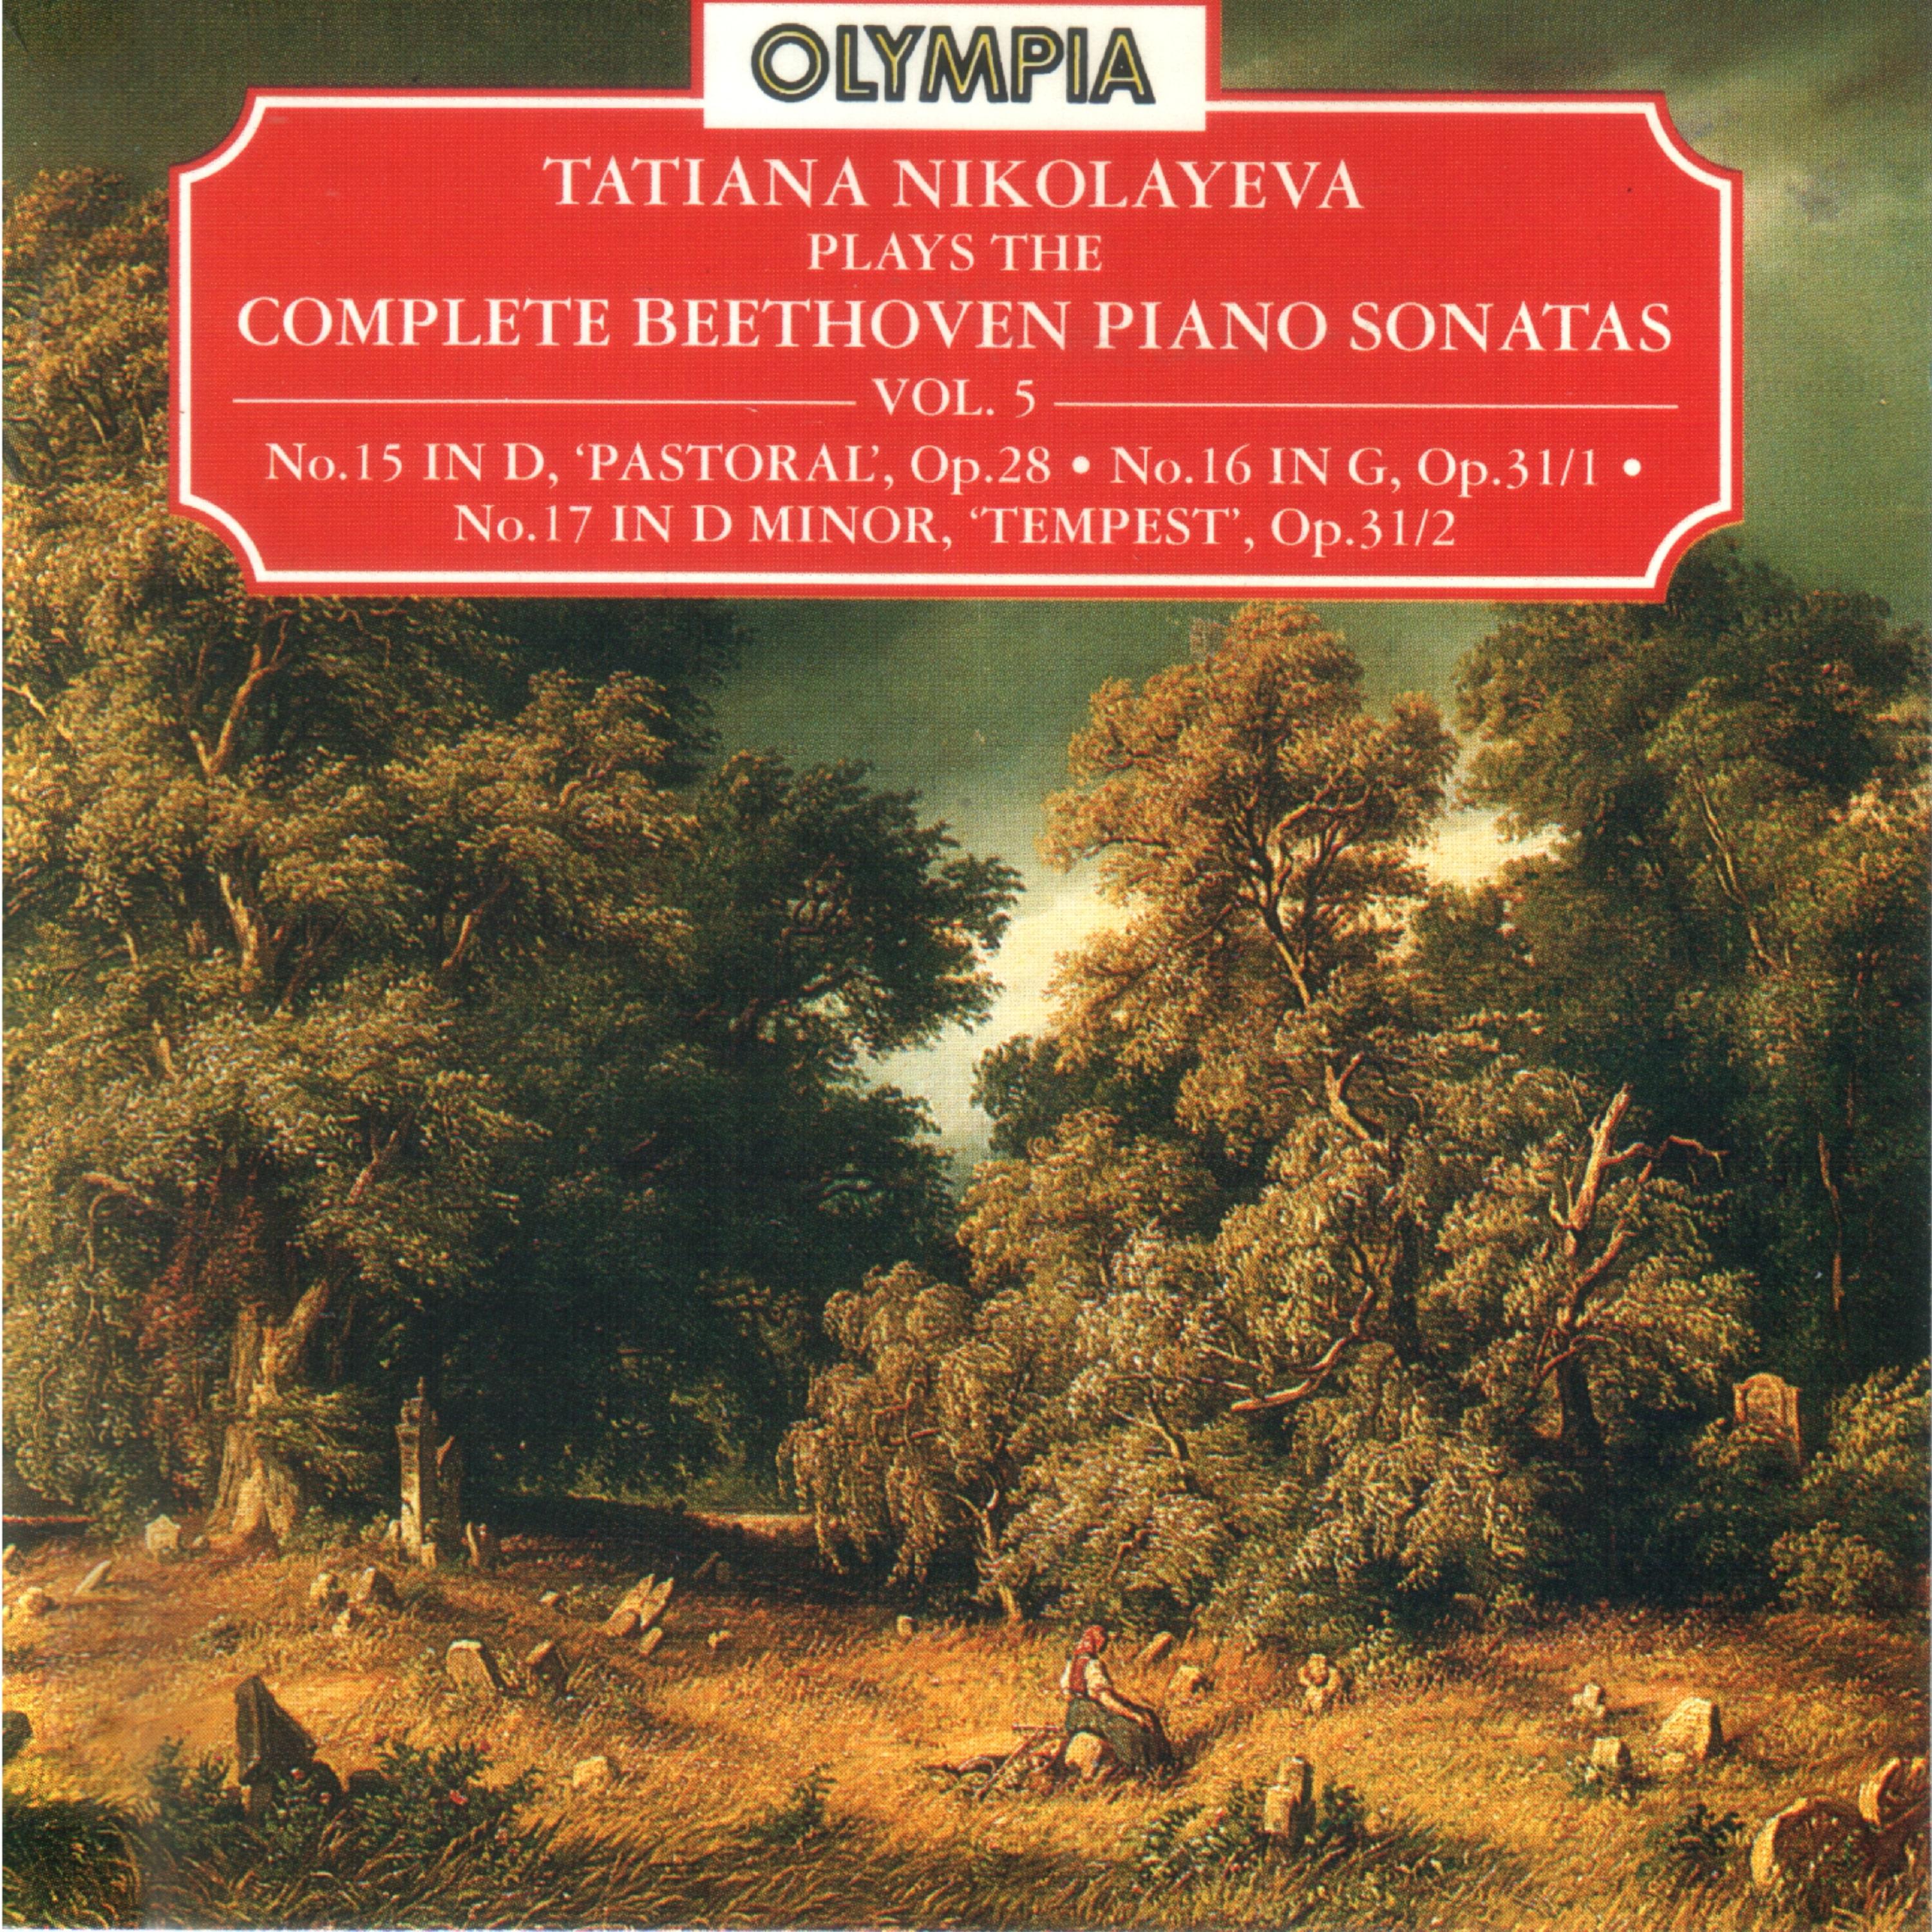 Piano Sonata No. 16 in G Major, Op. 31: I. Allegro vivace